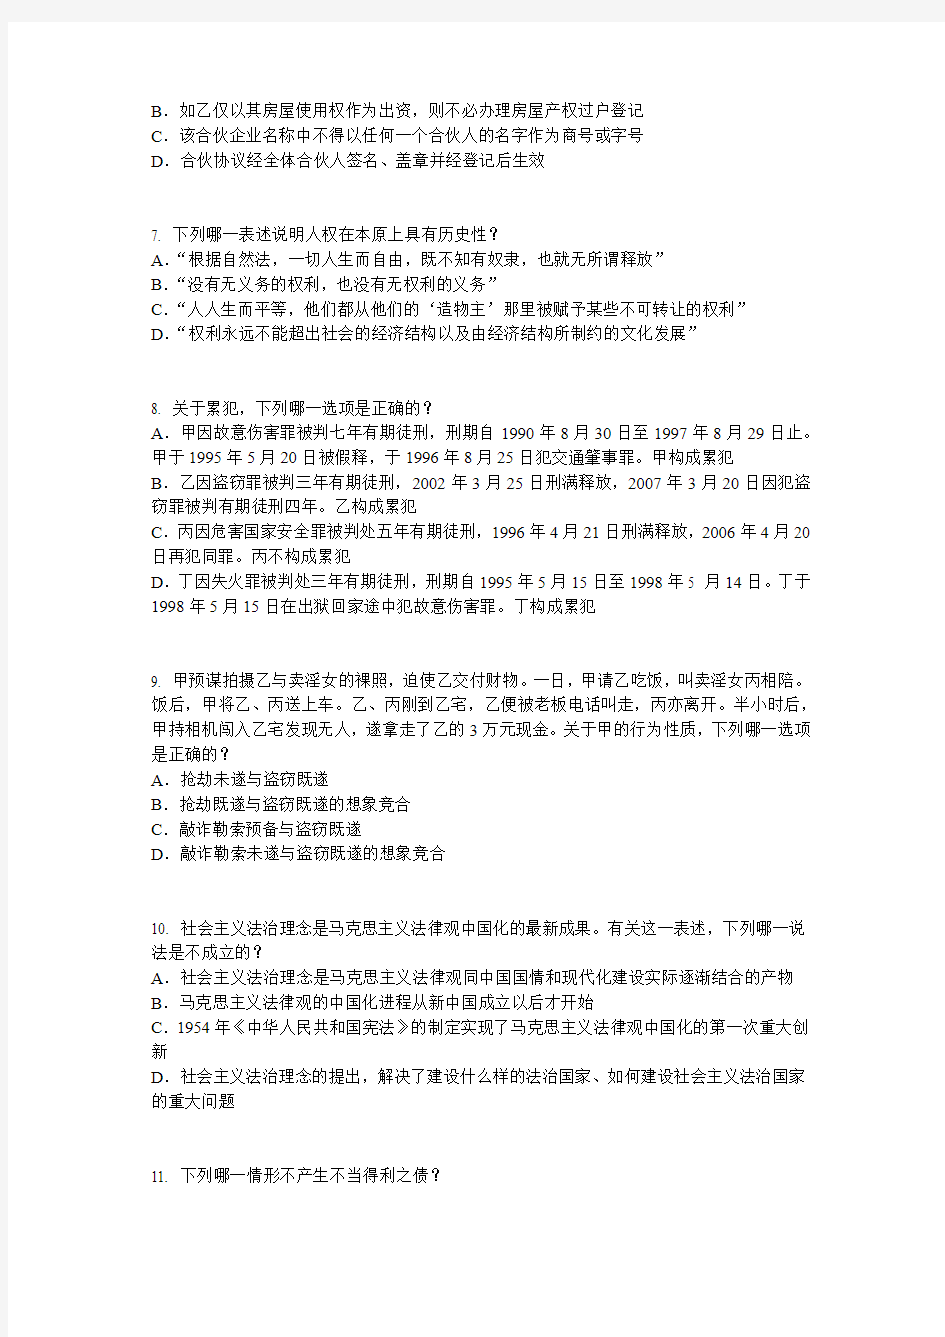 江苏省2016年下半年企业法律顾问实务考试试题